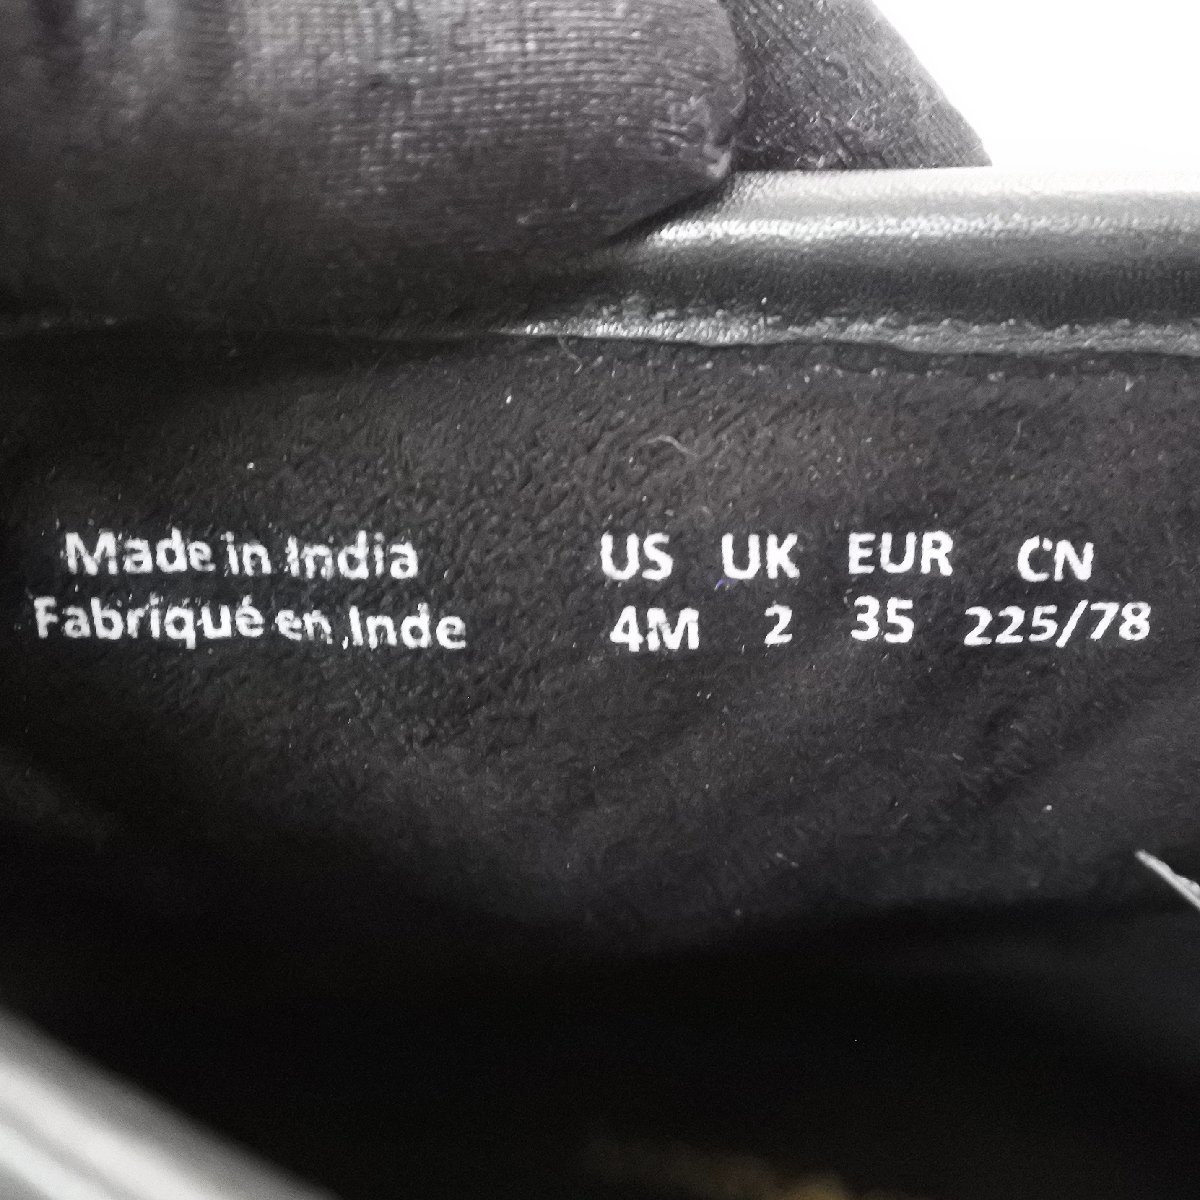  прекрасный товар EMPORIO ARMANI Emporio Armani стеганое полотно ботинки кожа черный чёрный US:4M UK:2 EUR:35 примерно 22.5. женский осень-зима обувь 